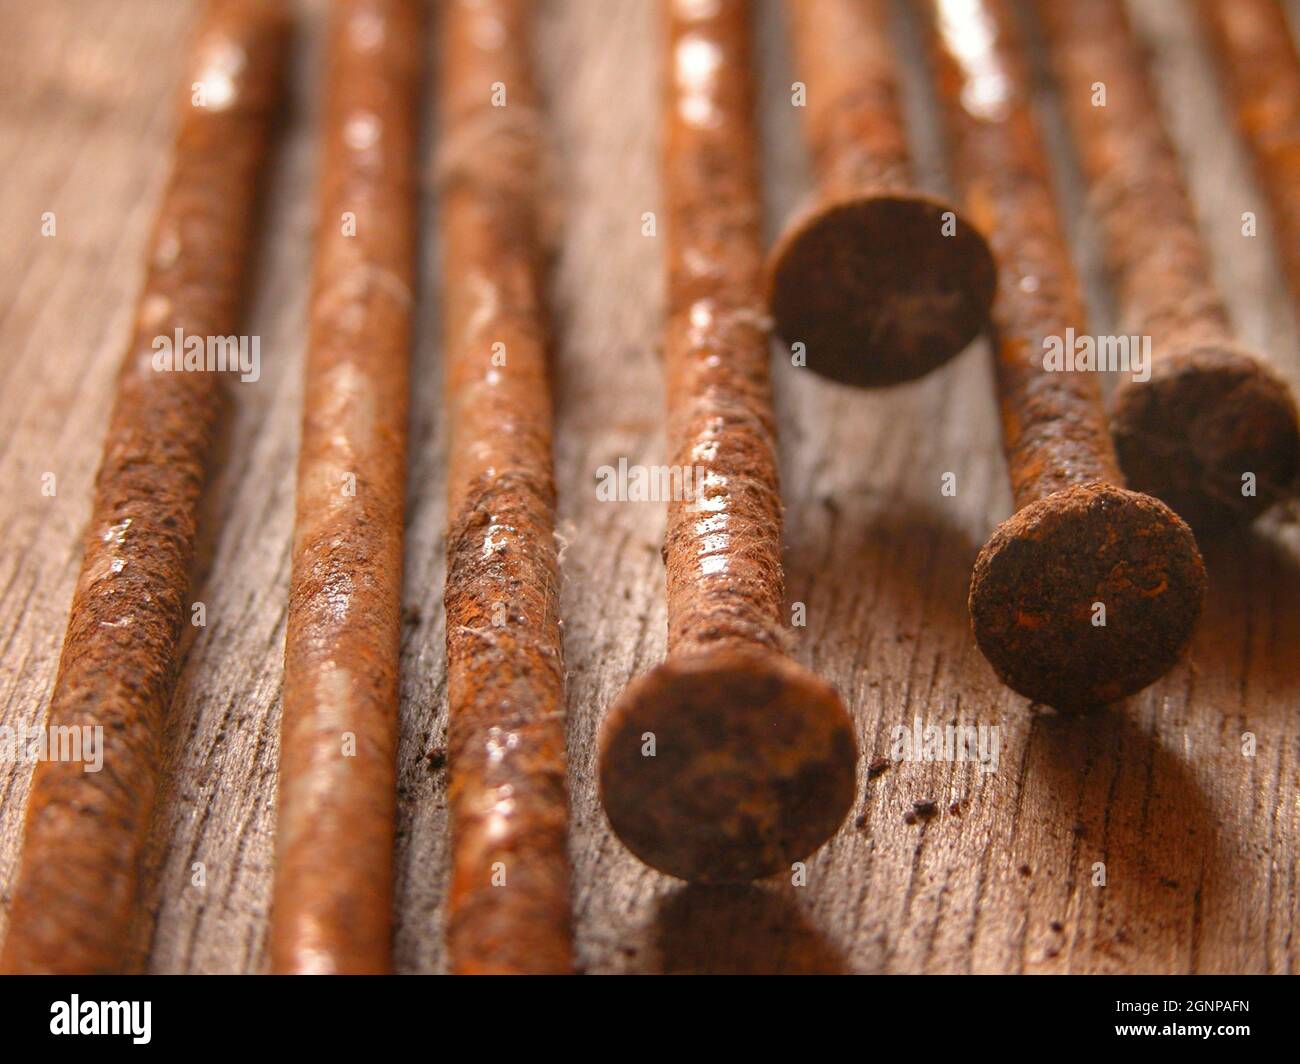 rusty nails Stock Photo